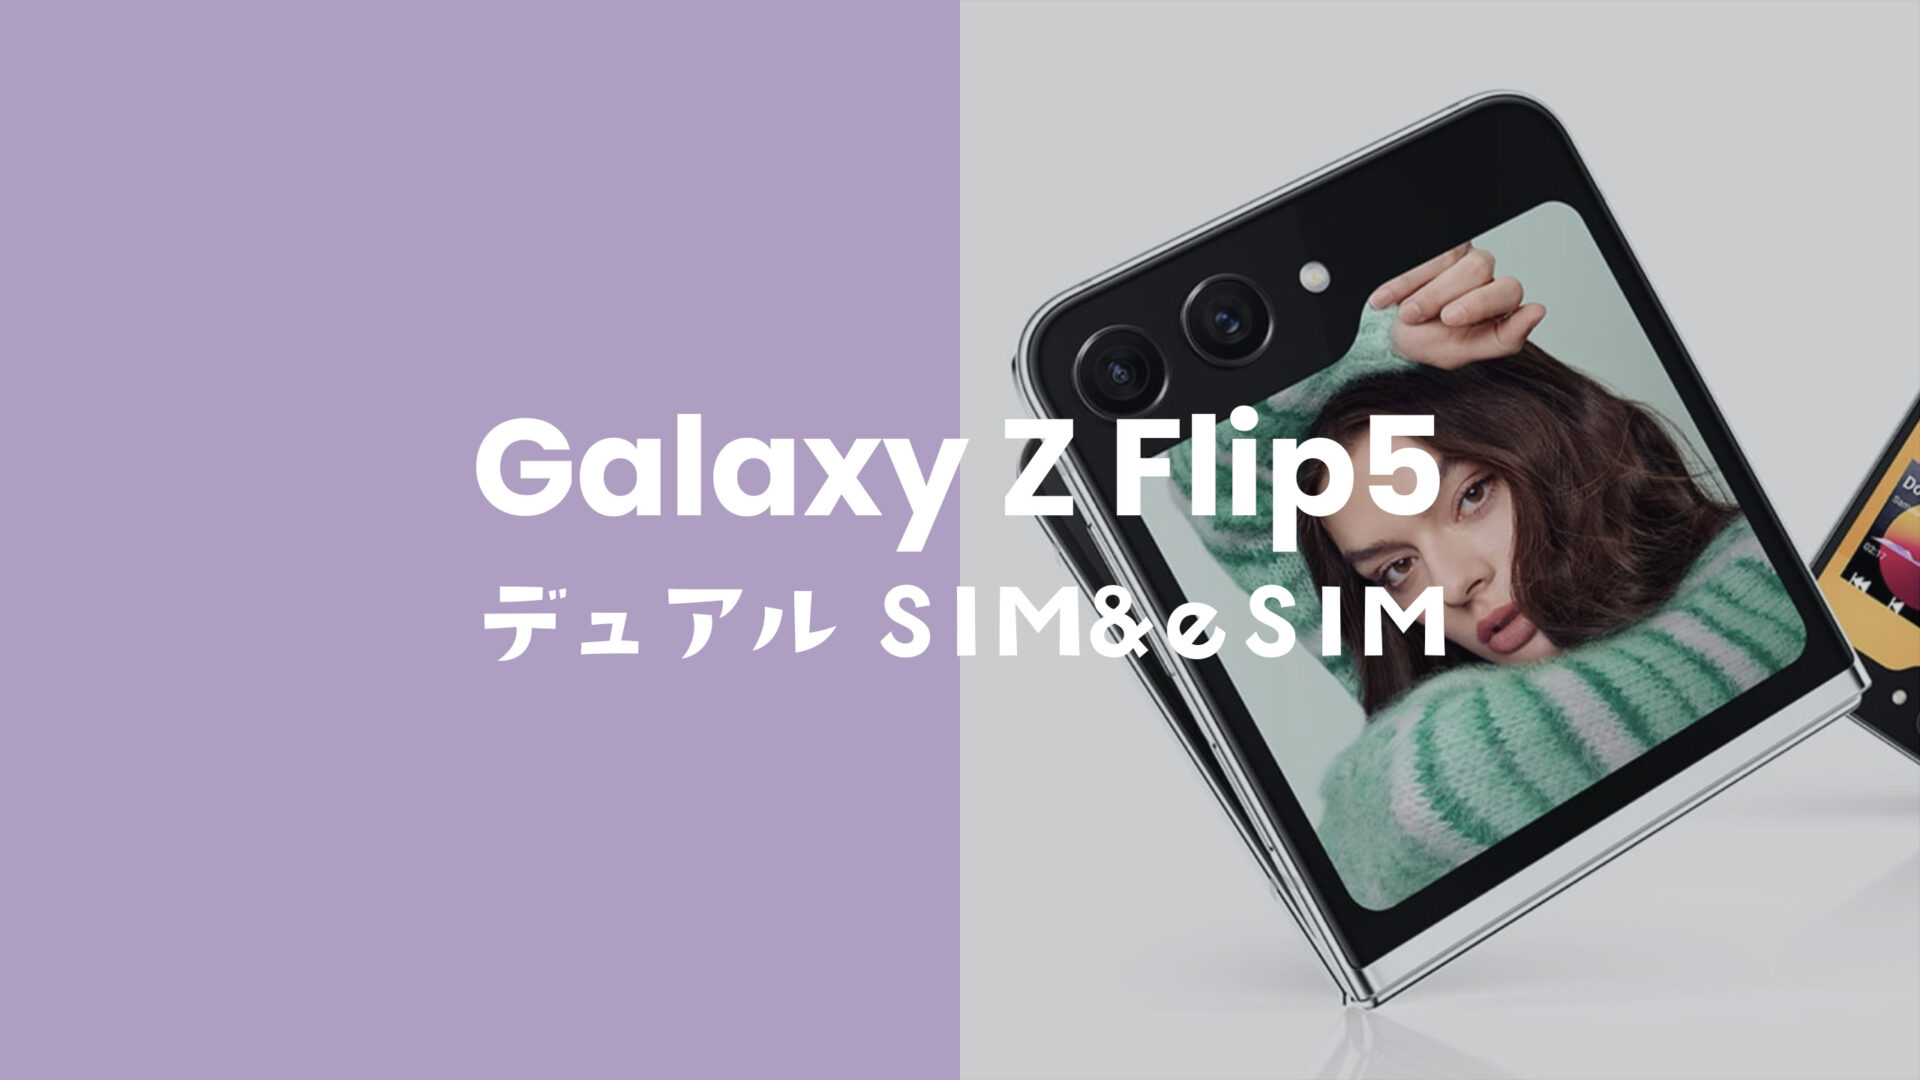 Galaxy Z Flip5はデュアルSIM対応でeSIM利用にも対応OK。のサムネイル画像